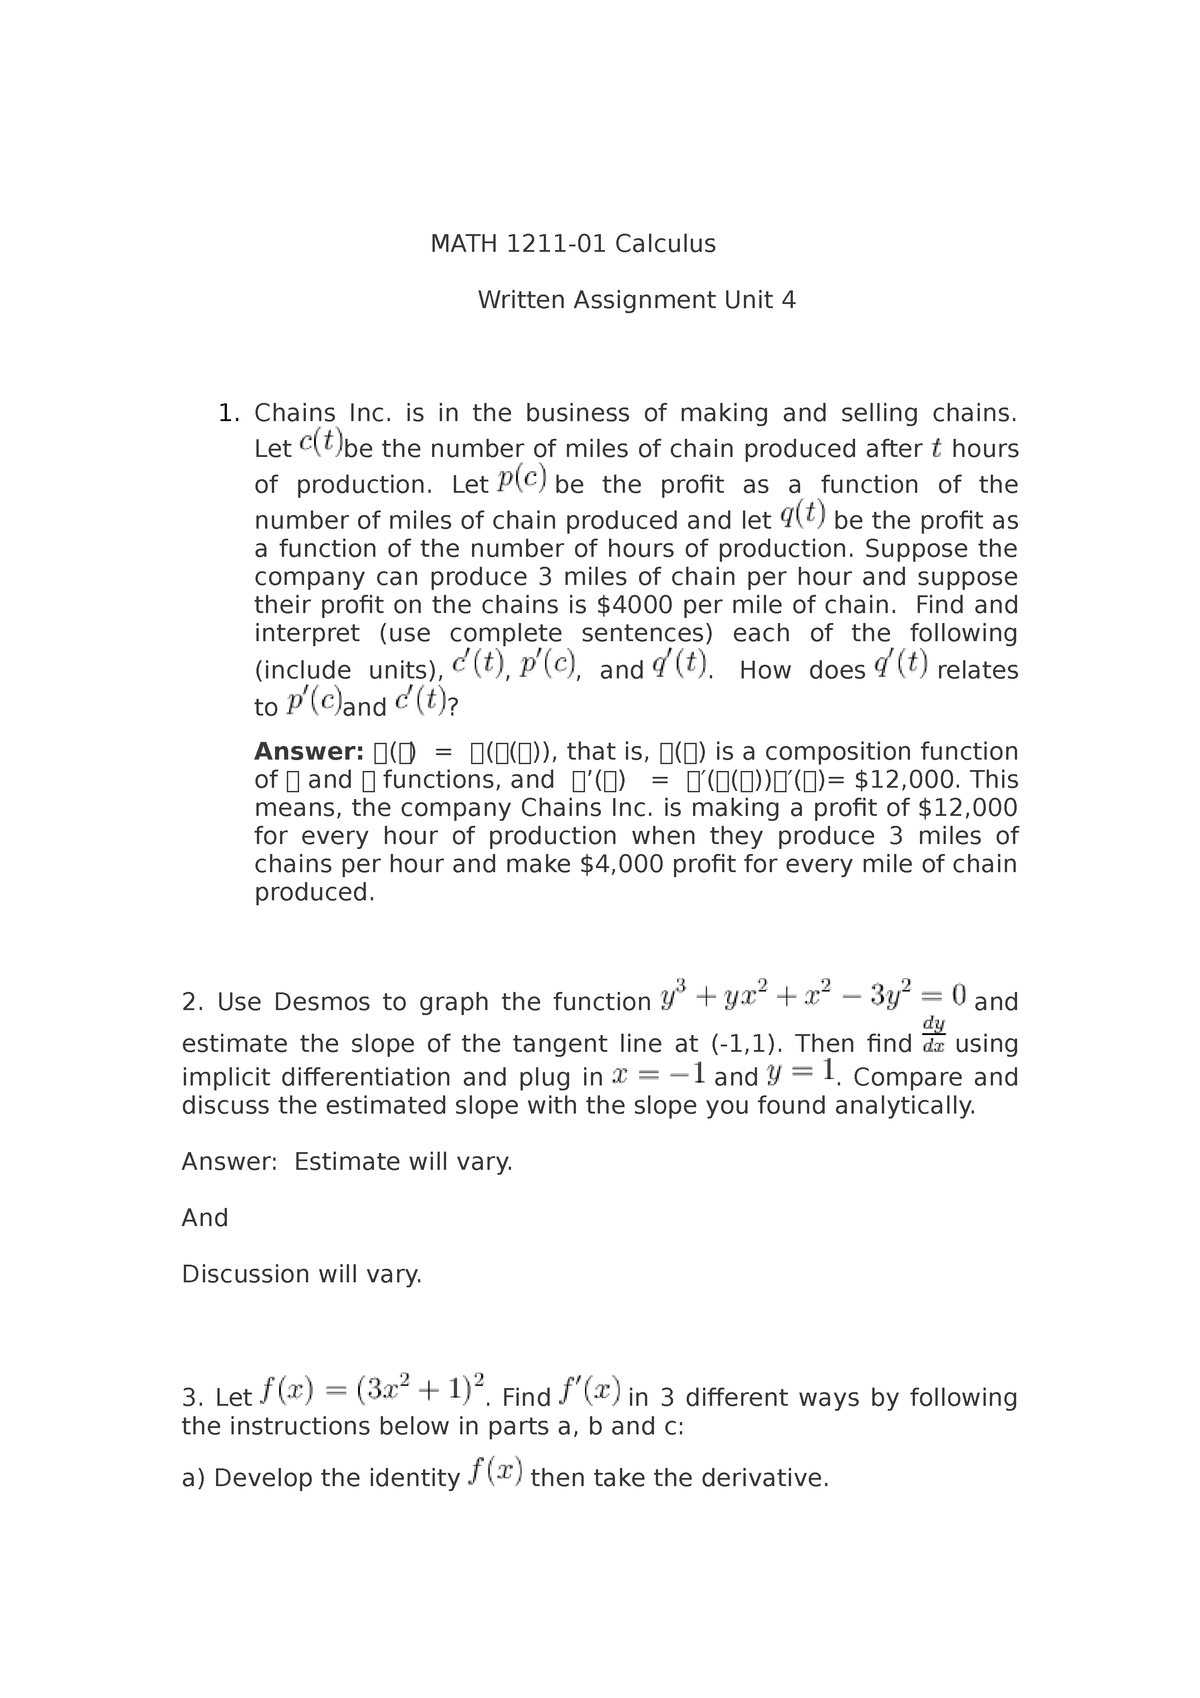 math 1211 written assignment unit 4